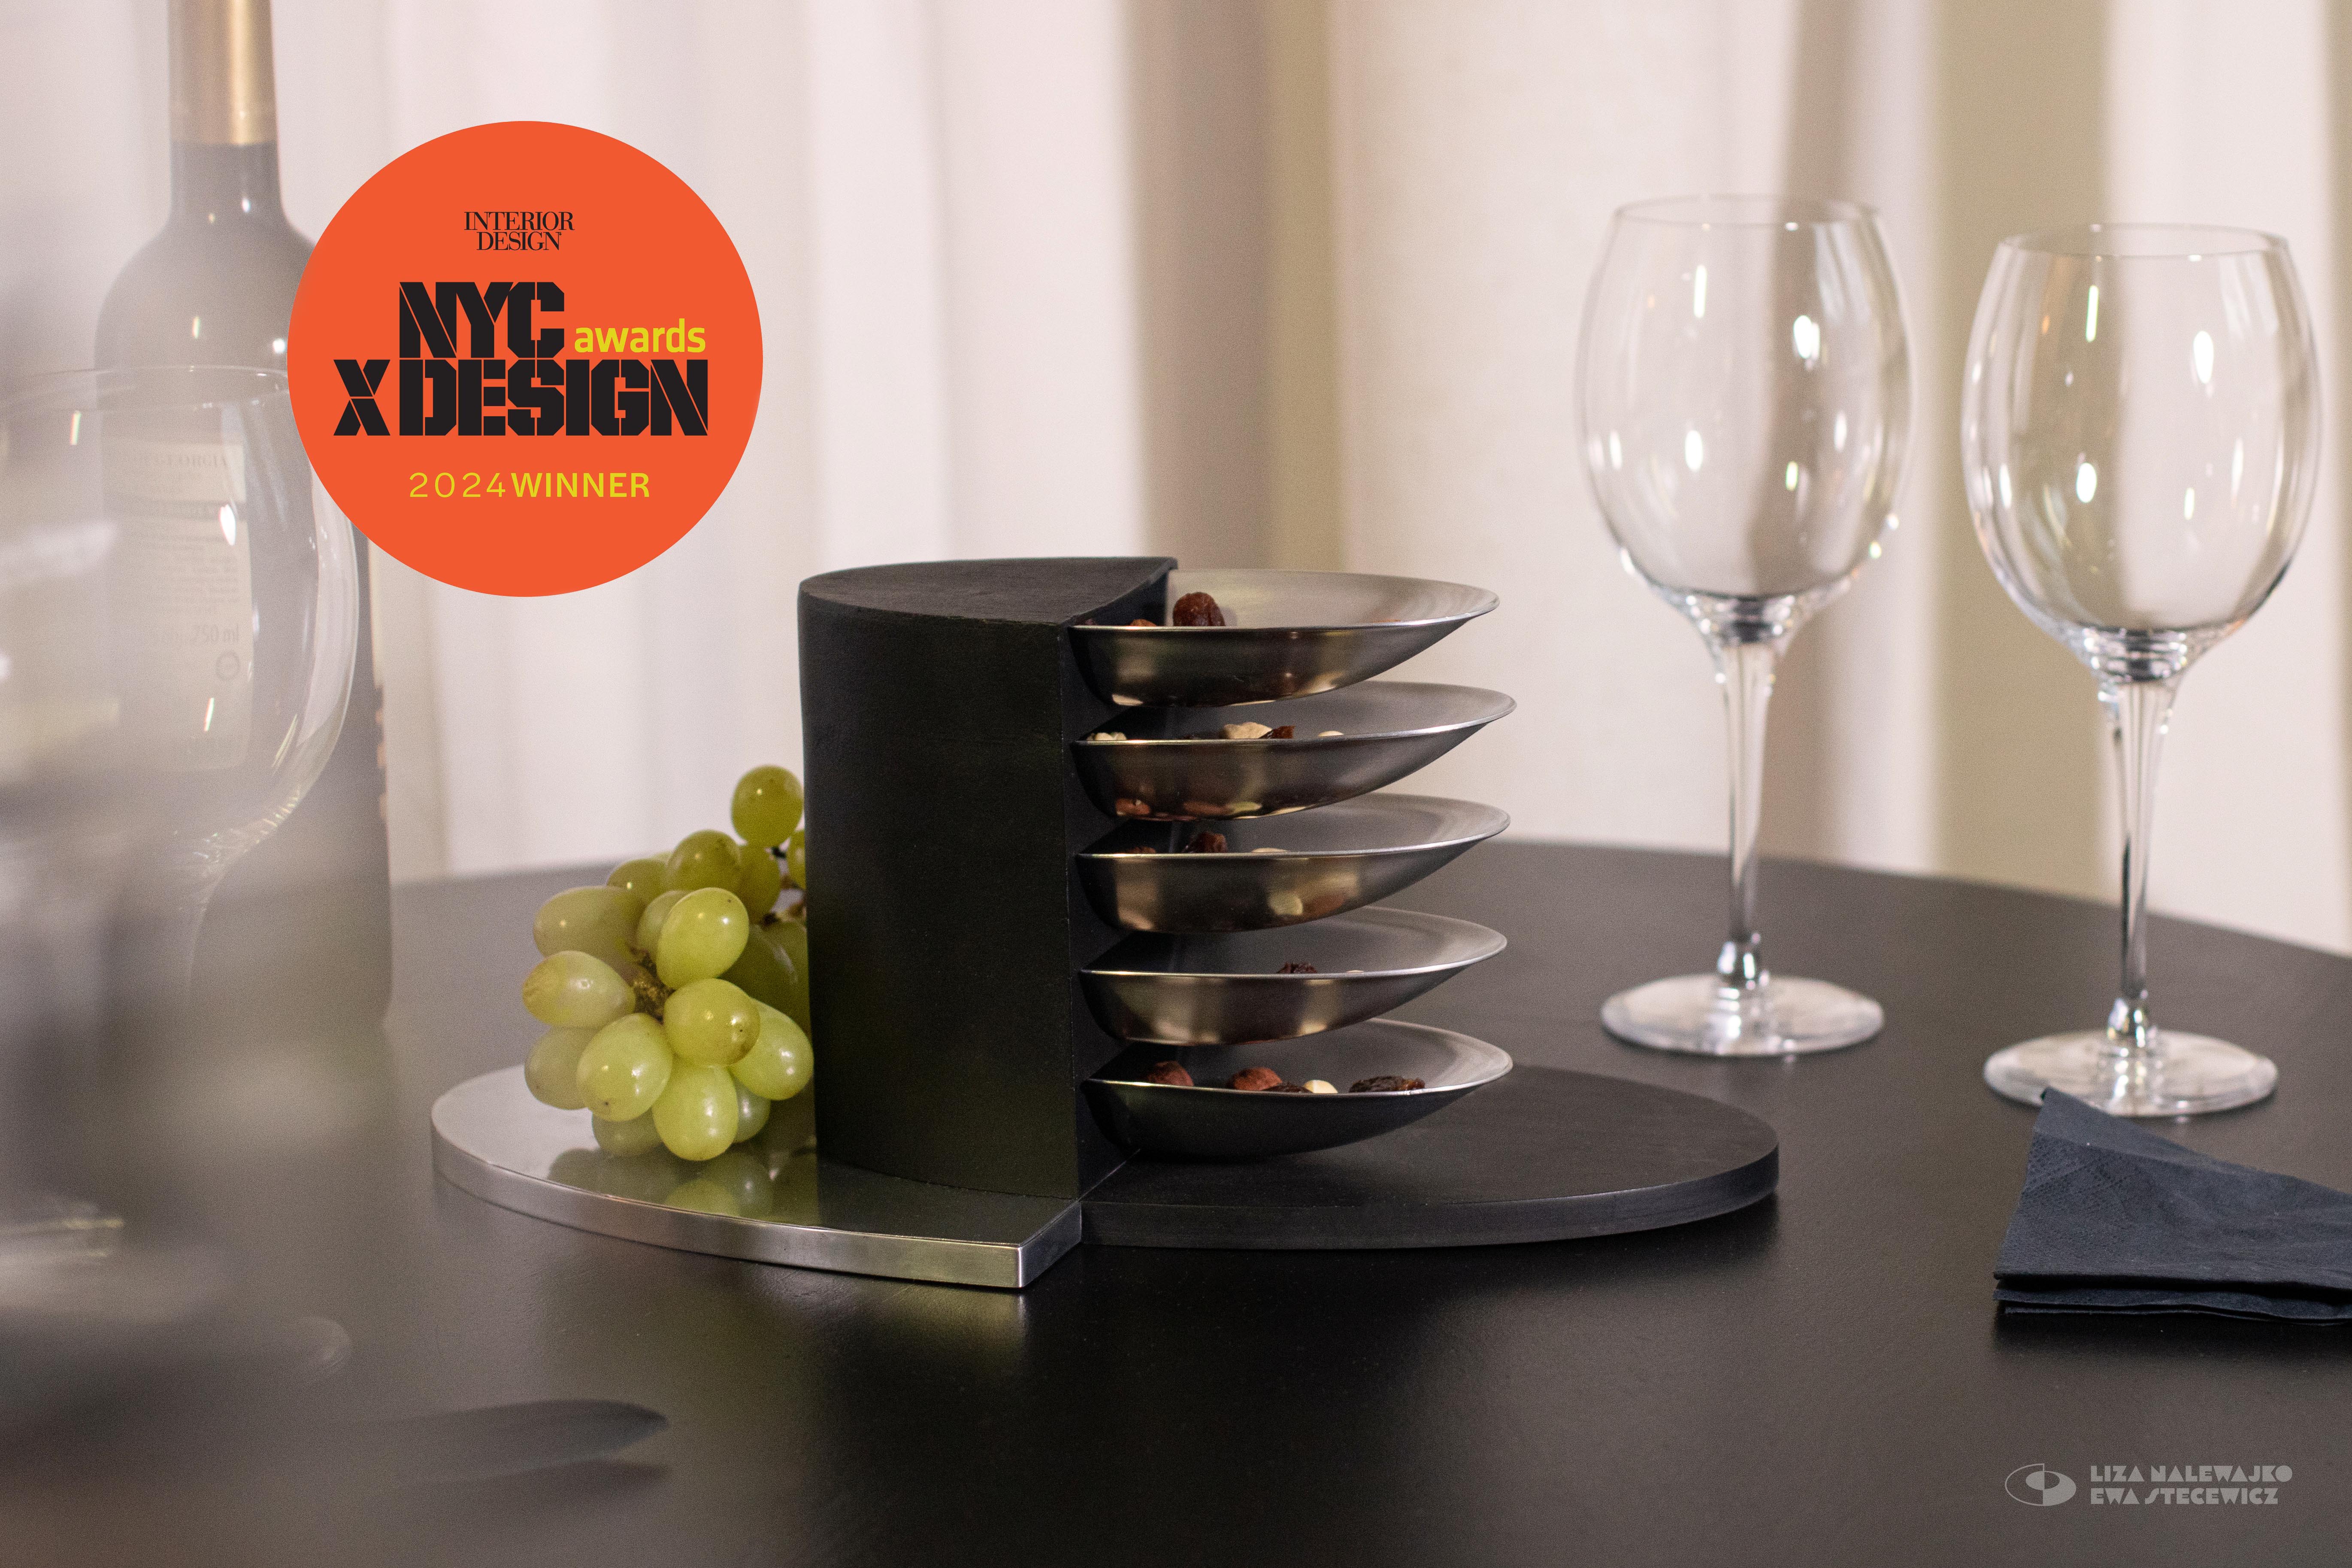 Sześciopoziomowa patera z wyjmowanymi miseczkami postawiona na stole koło kieliszków i kiści winogron. Na zdjęciu znajduje się logo konkursu NYCxDesign Awards 2024.